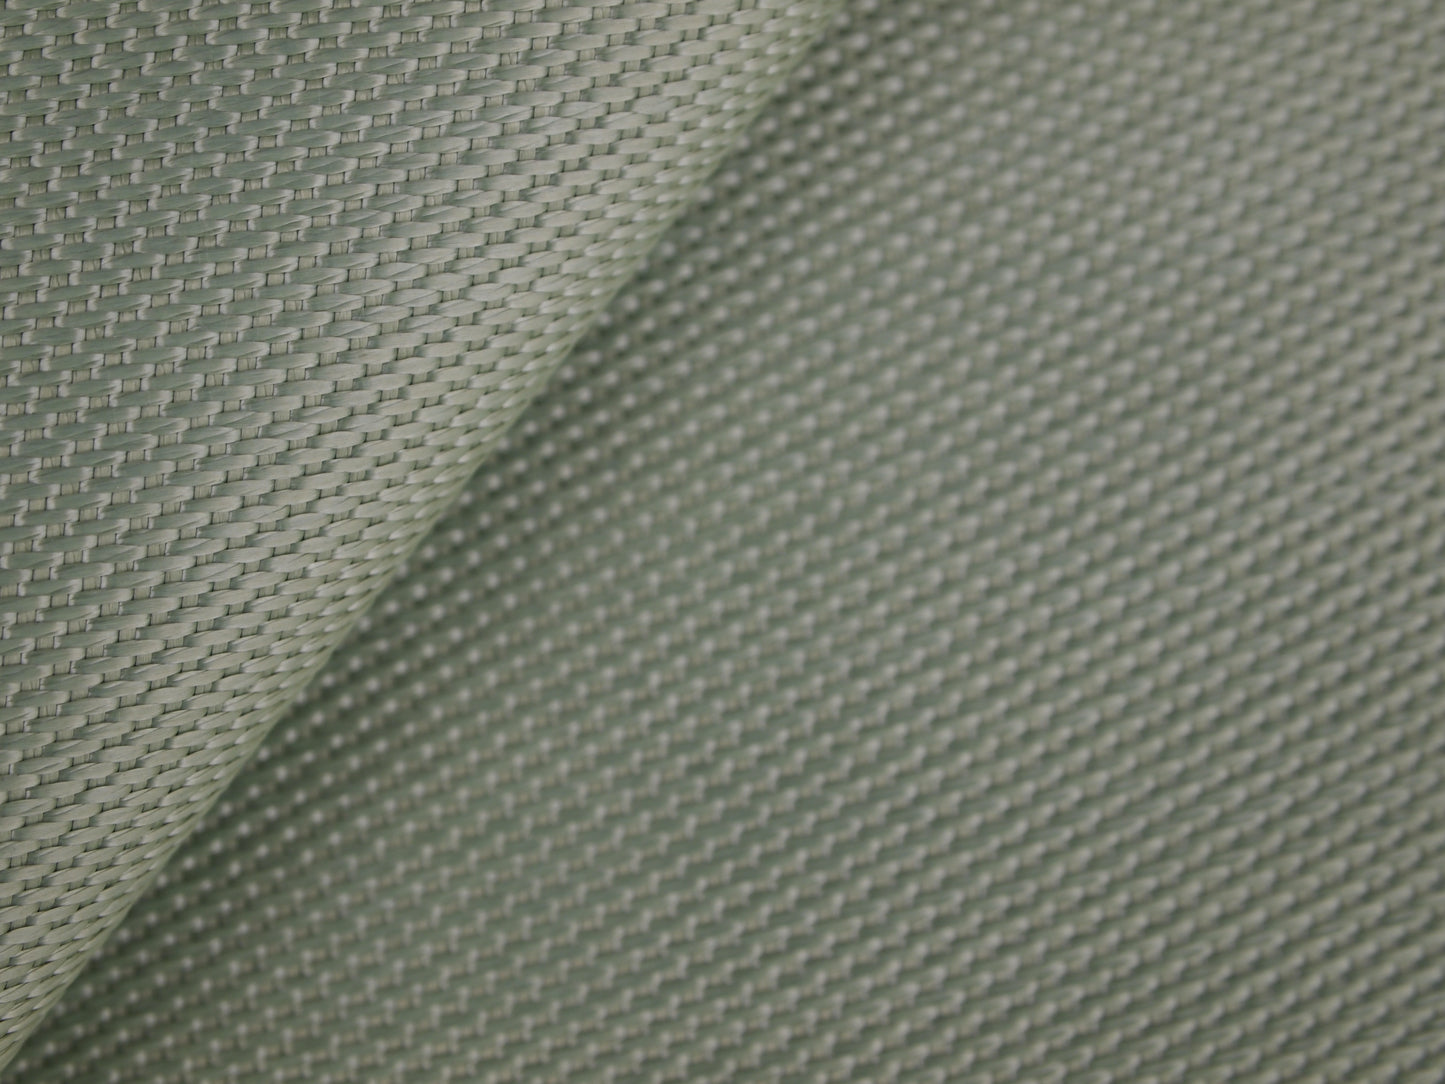 Refrasil Irish Cloth - .030" x 33" x 3'